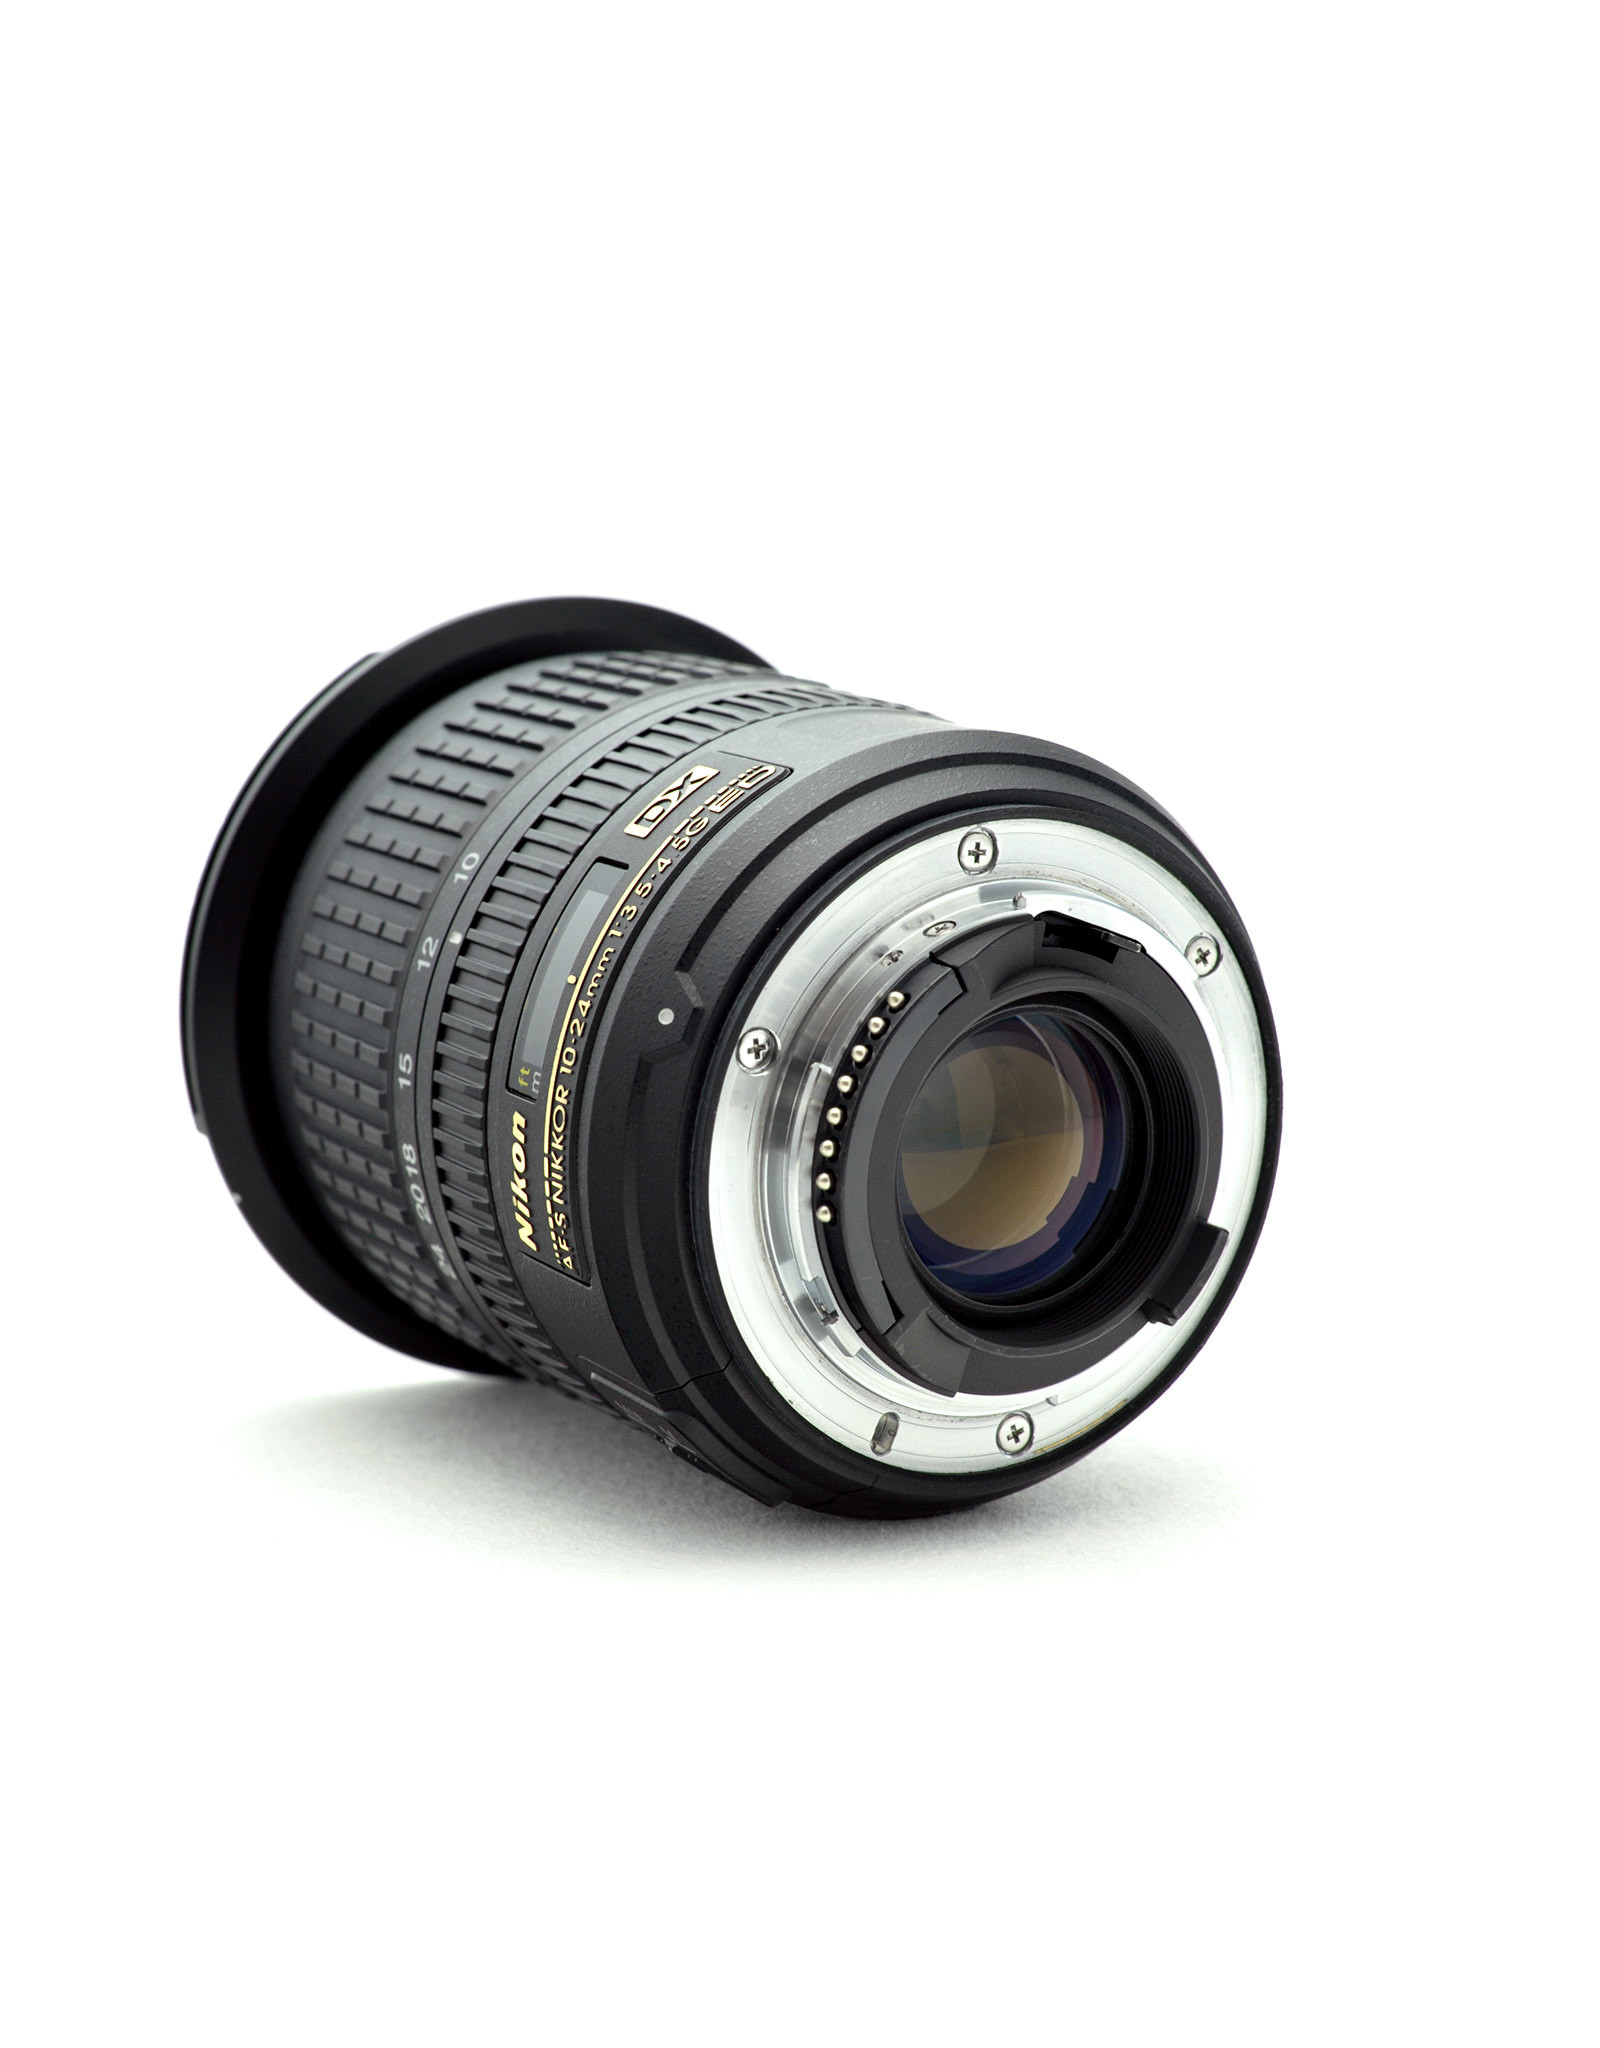 Nikon Nikon 10-24mm f3.5-4.5G AF-S DX   AP1021201